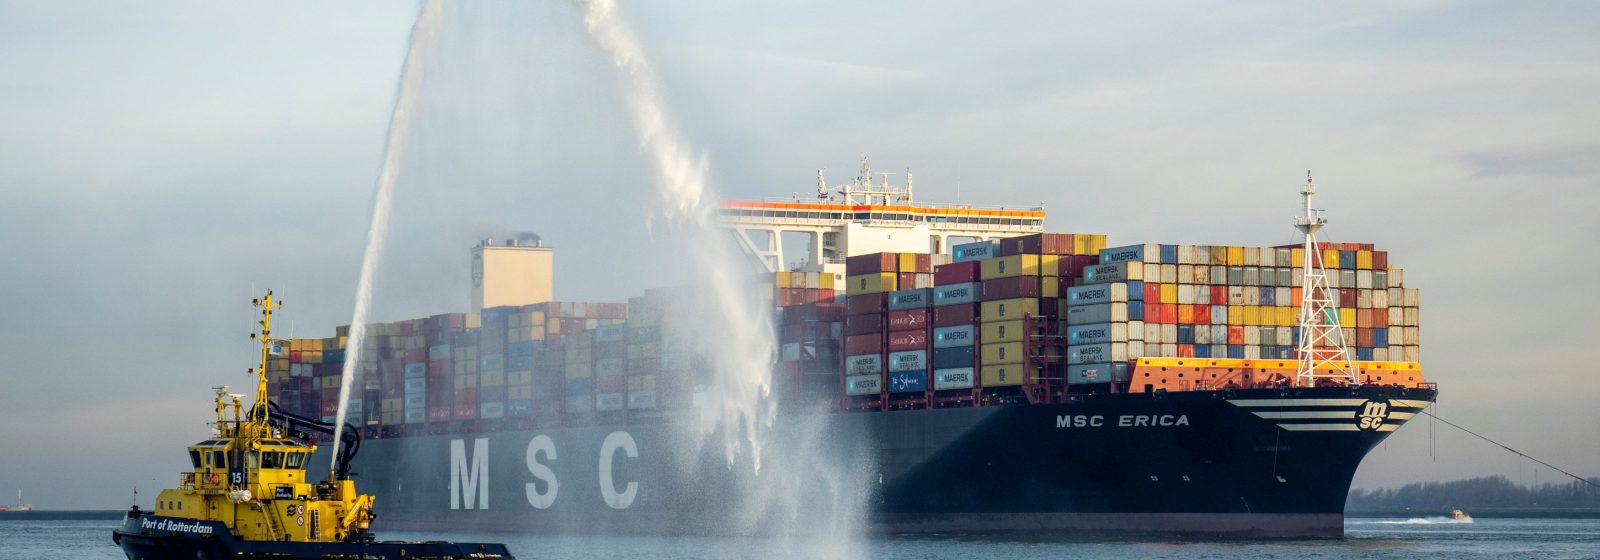 Containerschepen op spuitserenade onthaald voor 15 miljoenste teu (Rotterdam)